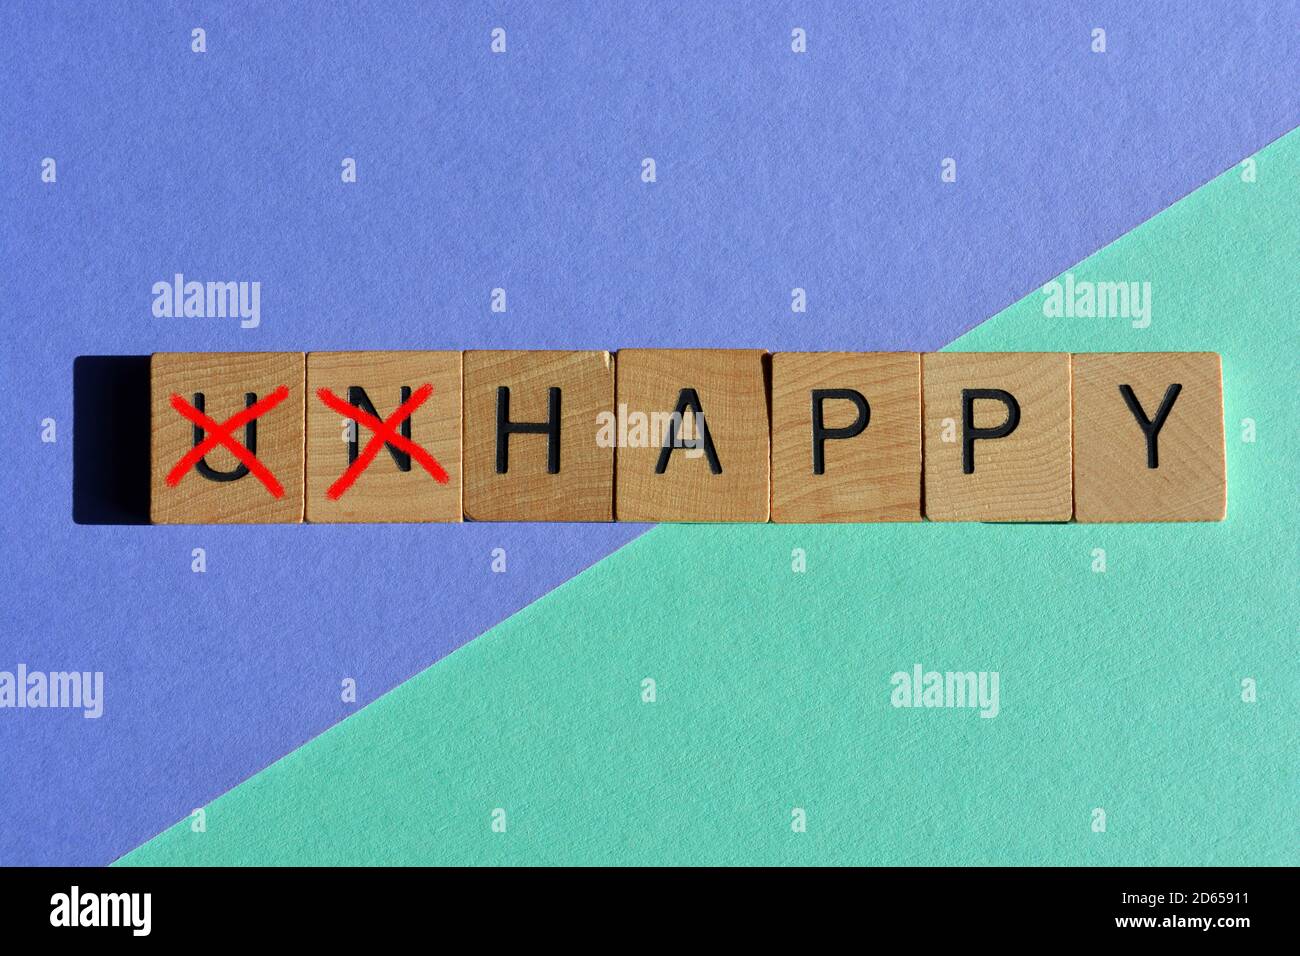 Infelice in lettere di legno con il prefisso un barrato, lasciando la parola opposta felice isolato su uno sfondo colorato Foto Stock